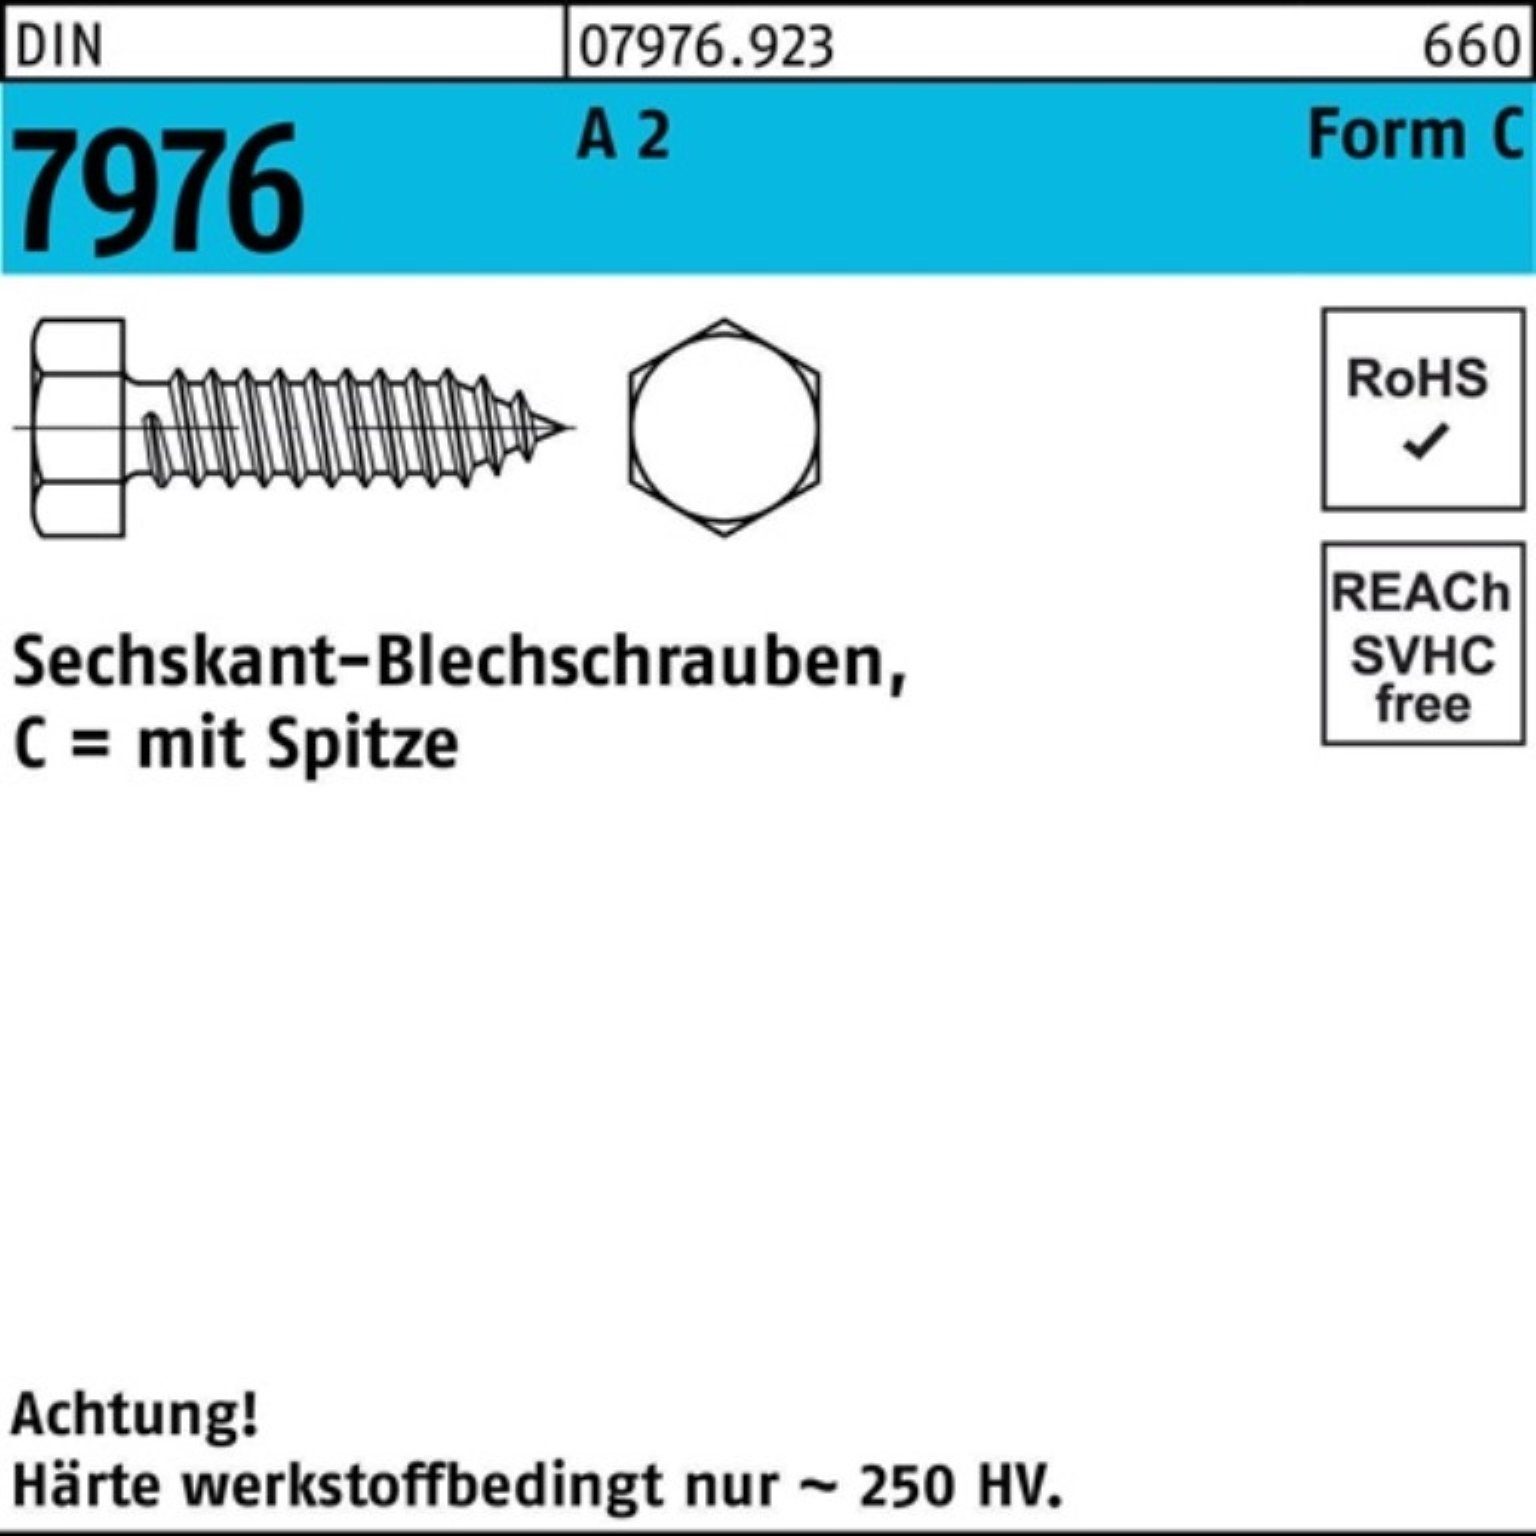 Reyher Blechschraube 500er Pack Blechschraube 2 Sechskant/Spitze 22 7976 4,2x DIN C S A 500